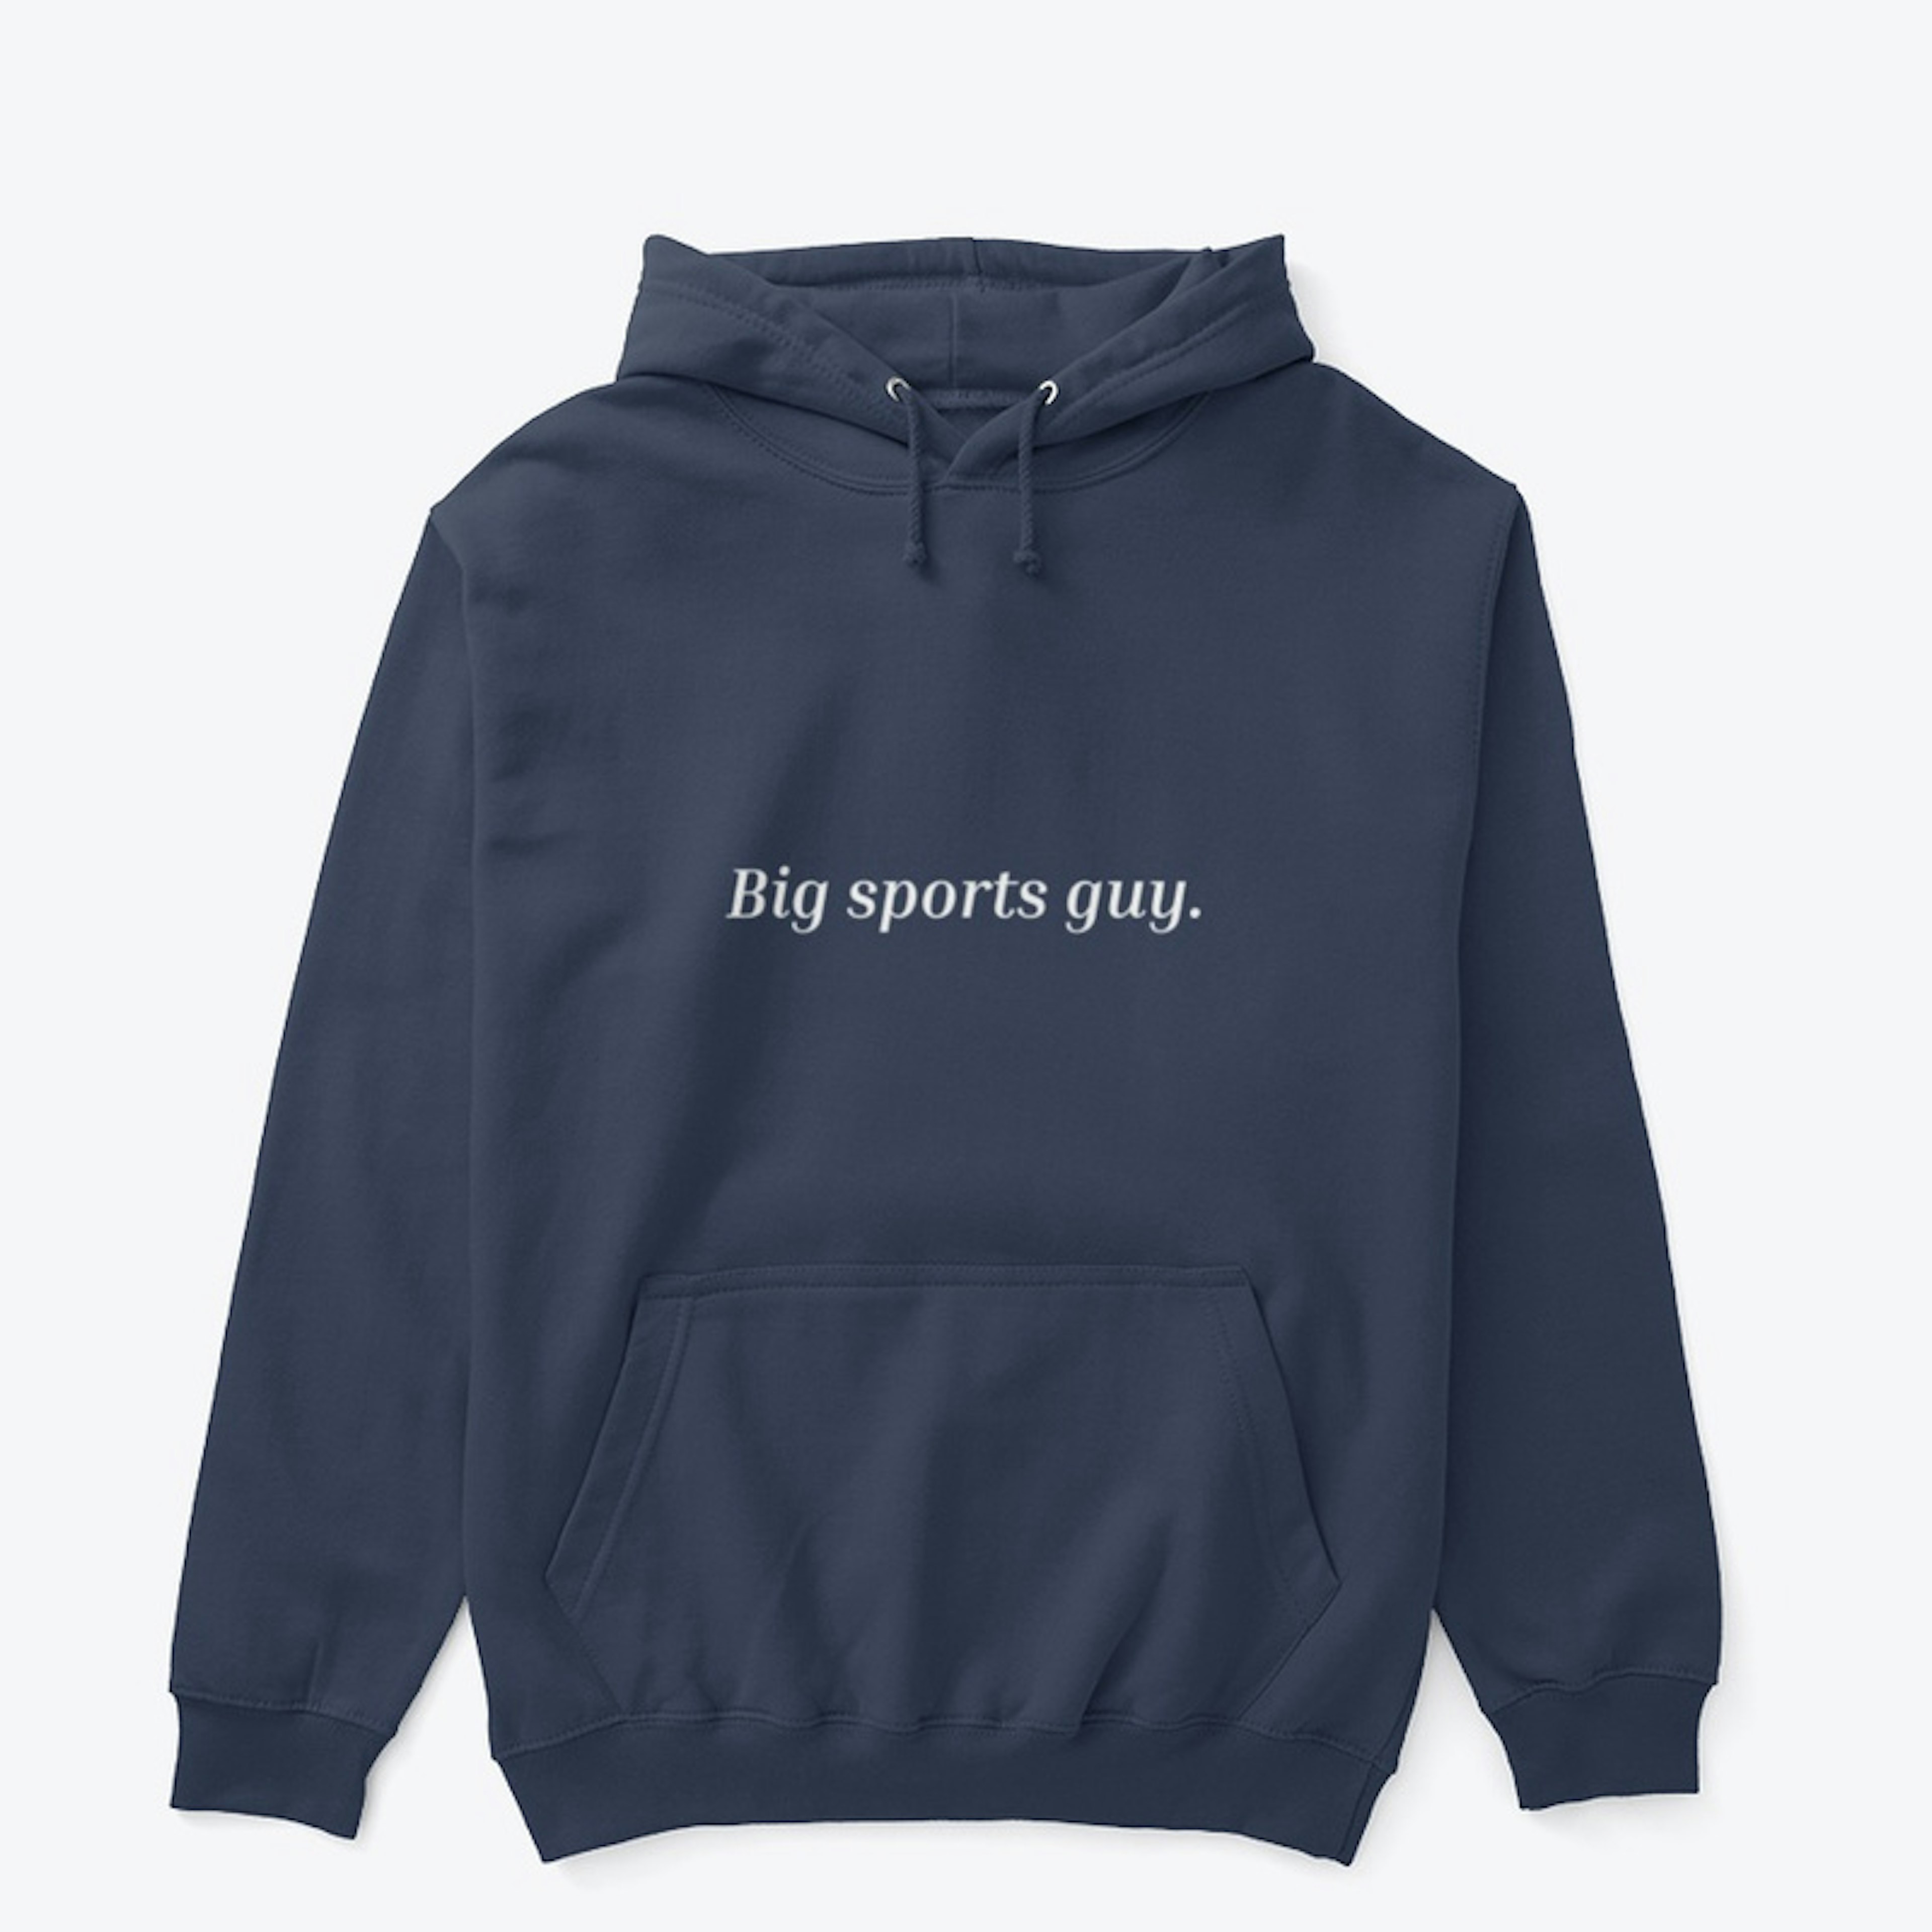 Big sports guy hoodie